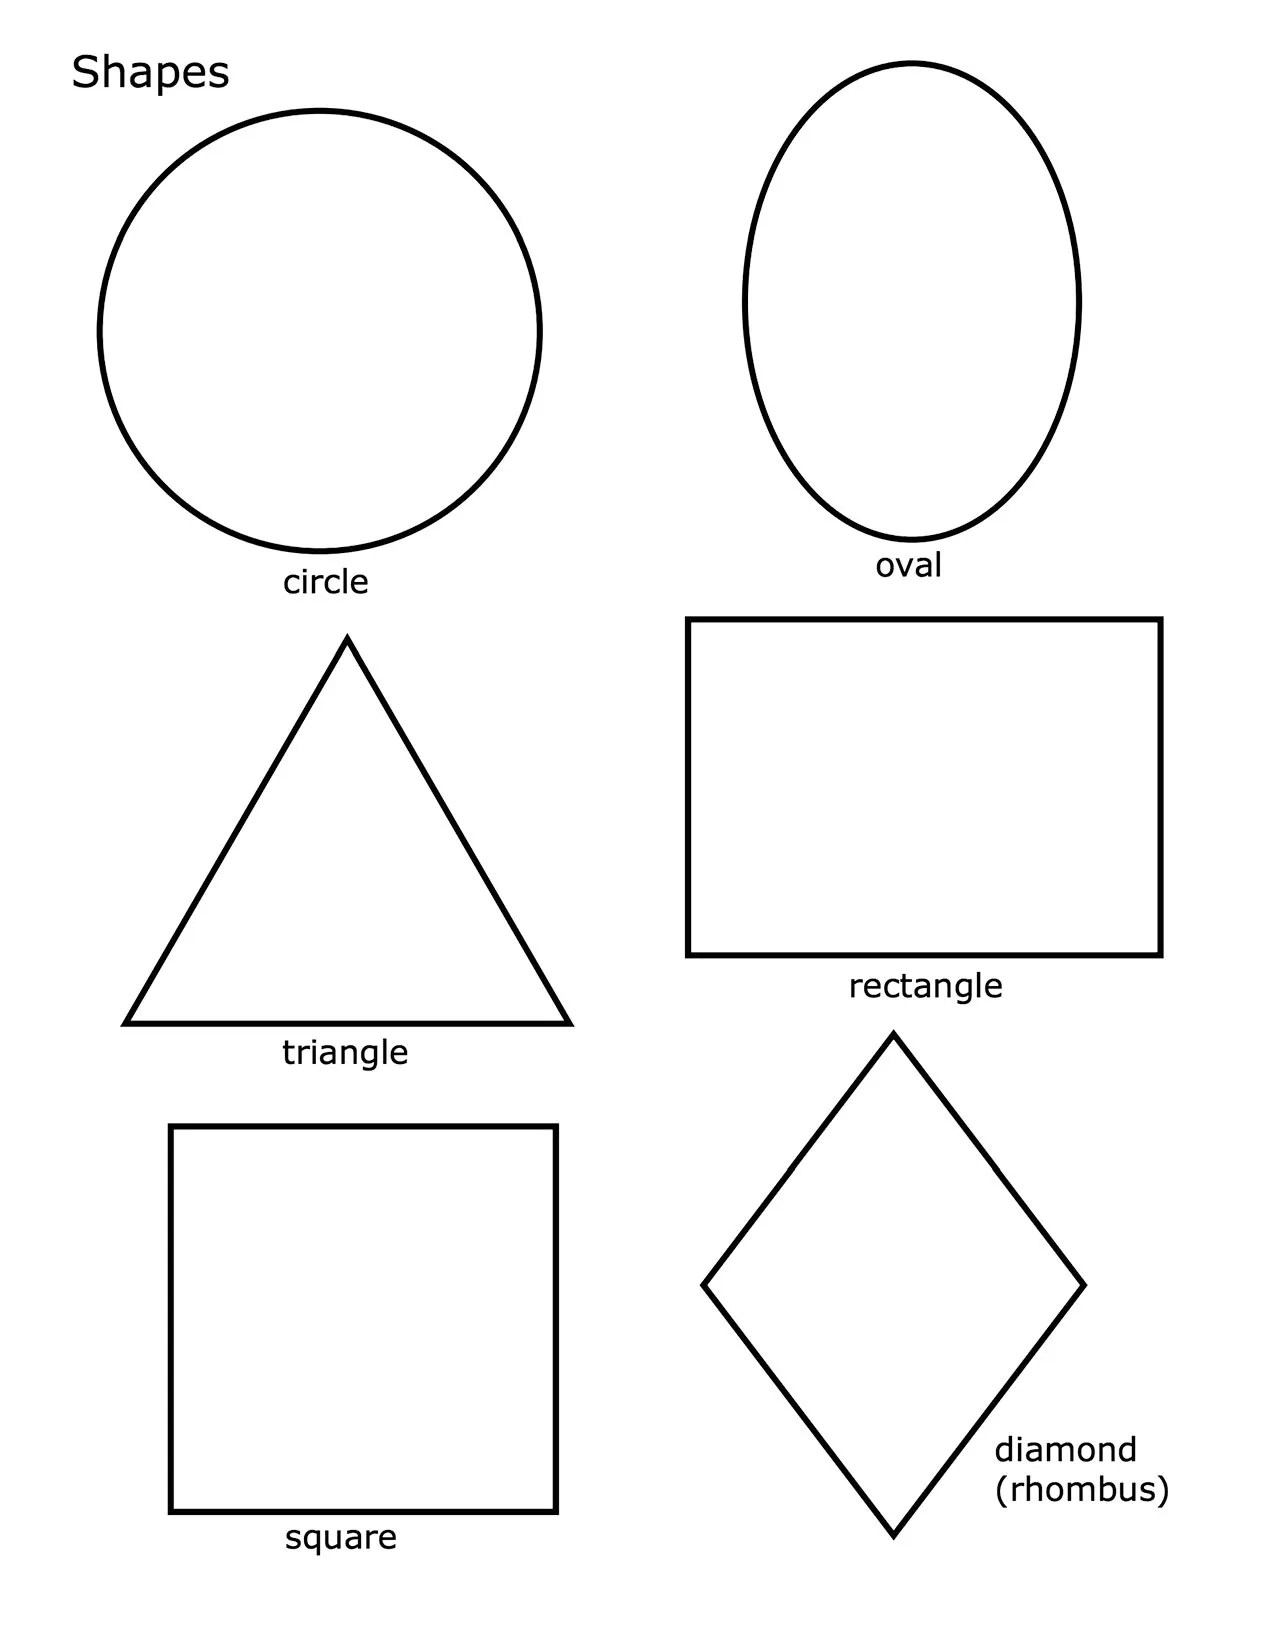 Геометрические фигуры: круг, треугольник, прямоугольник, квадрат.